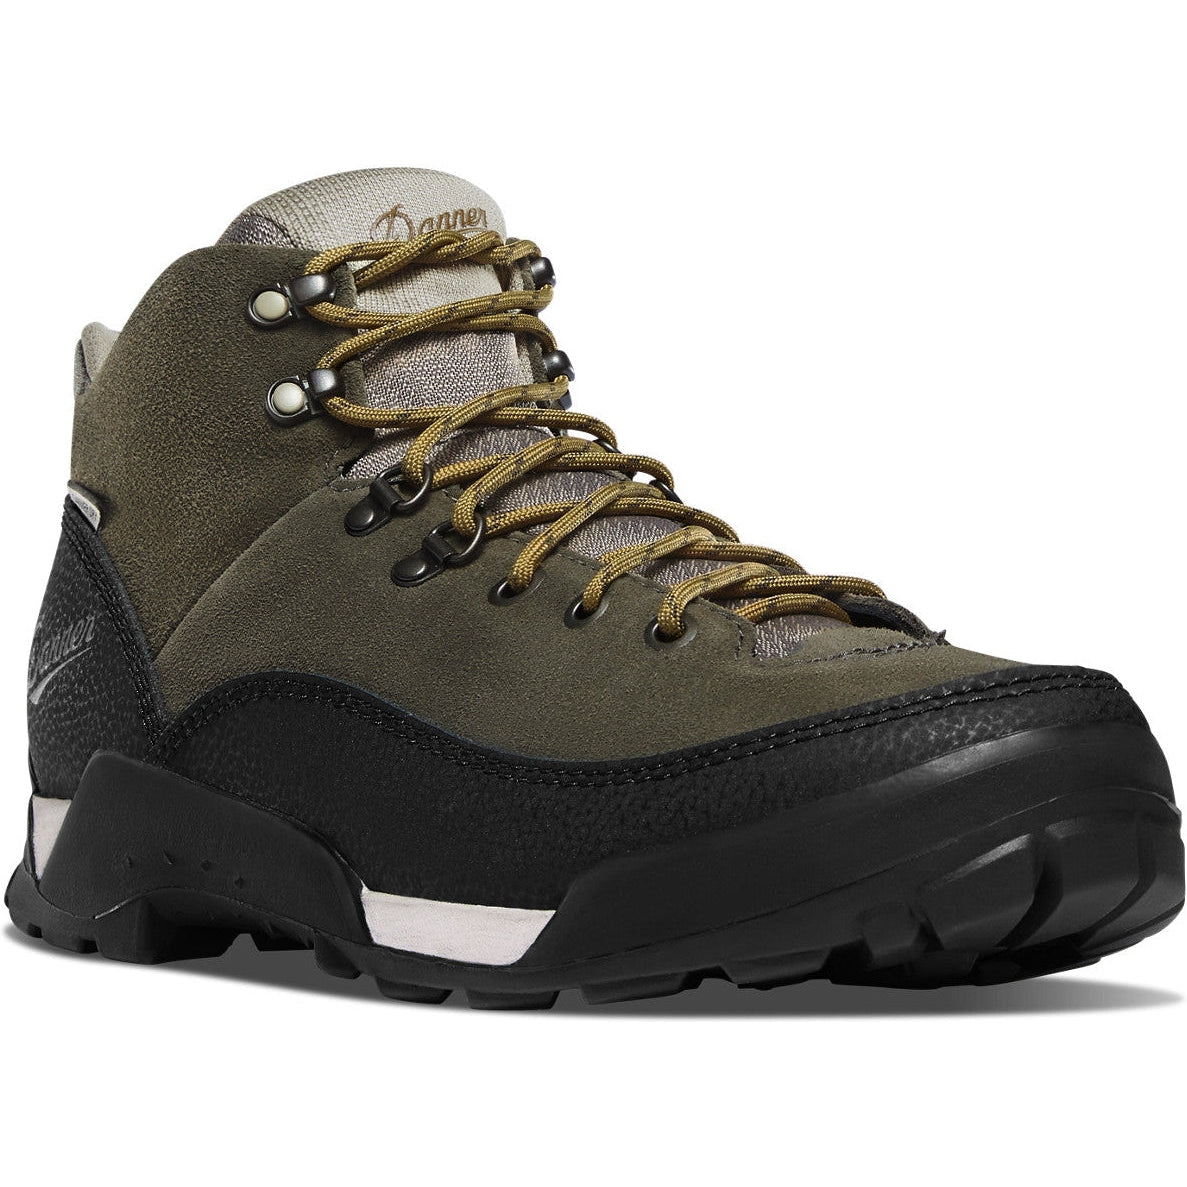 Danner Men's Panorama 6" Waterproof Hiking Shoe - Black Olive - 63435  - Overlook Boots